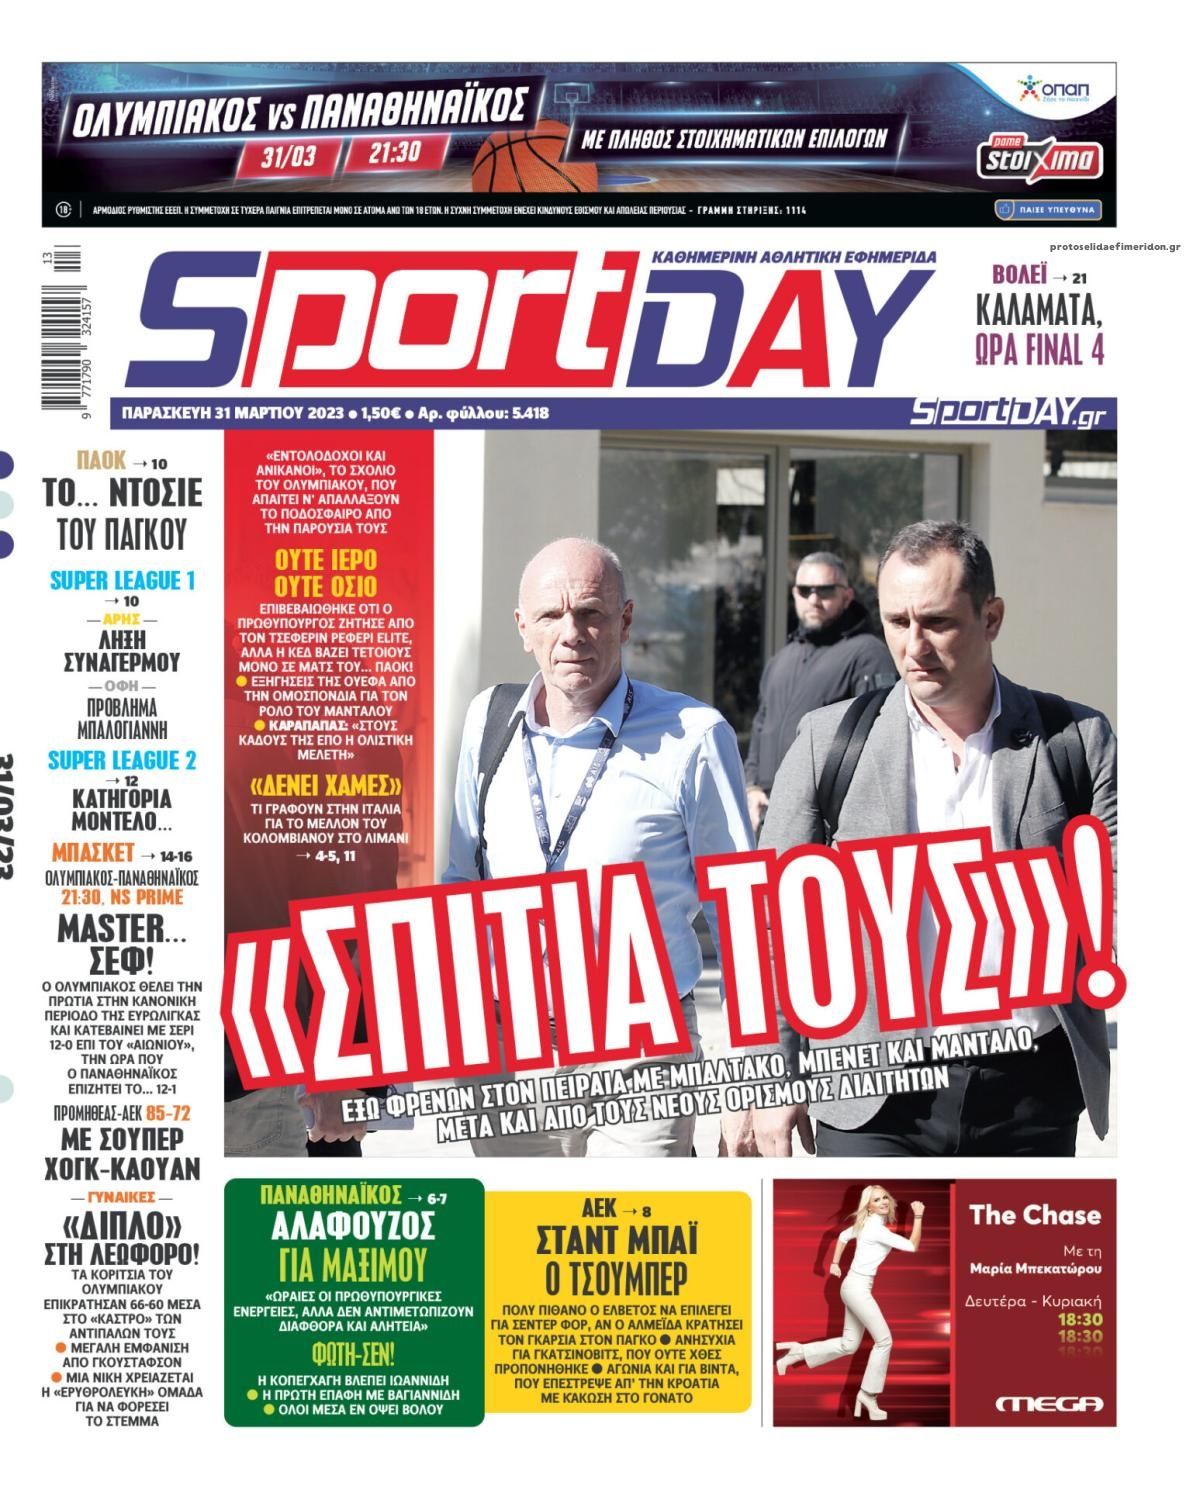 Πρωτοσέλιδο Sportday - 31/03/2023